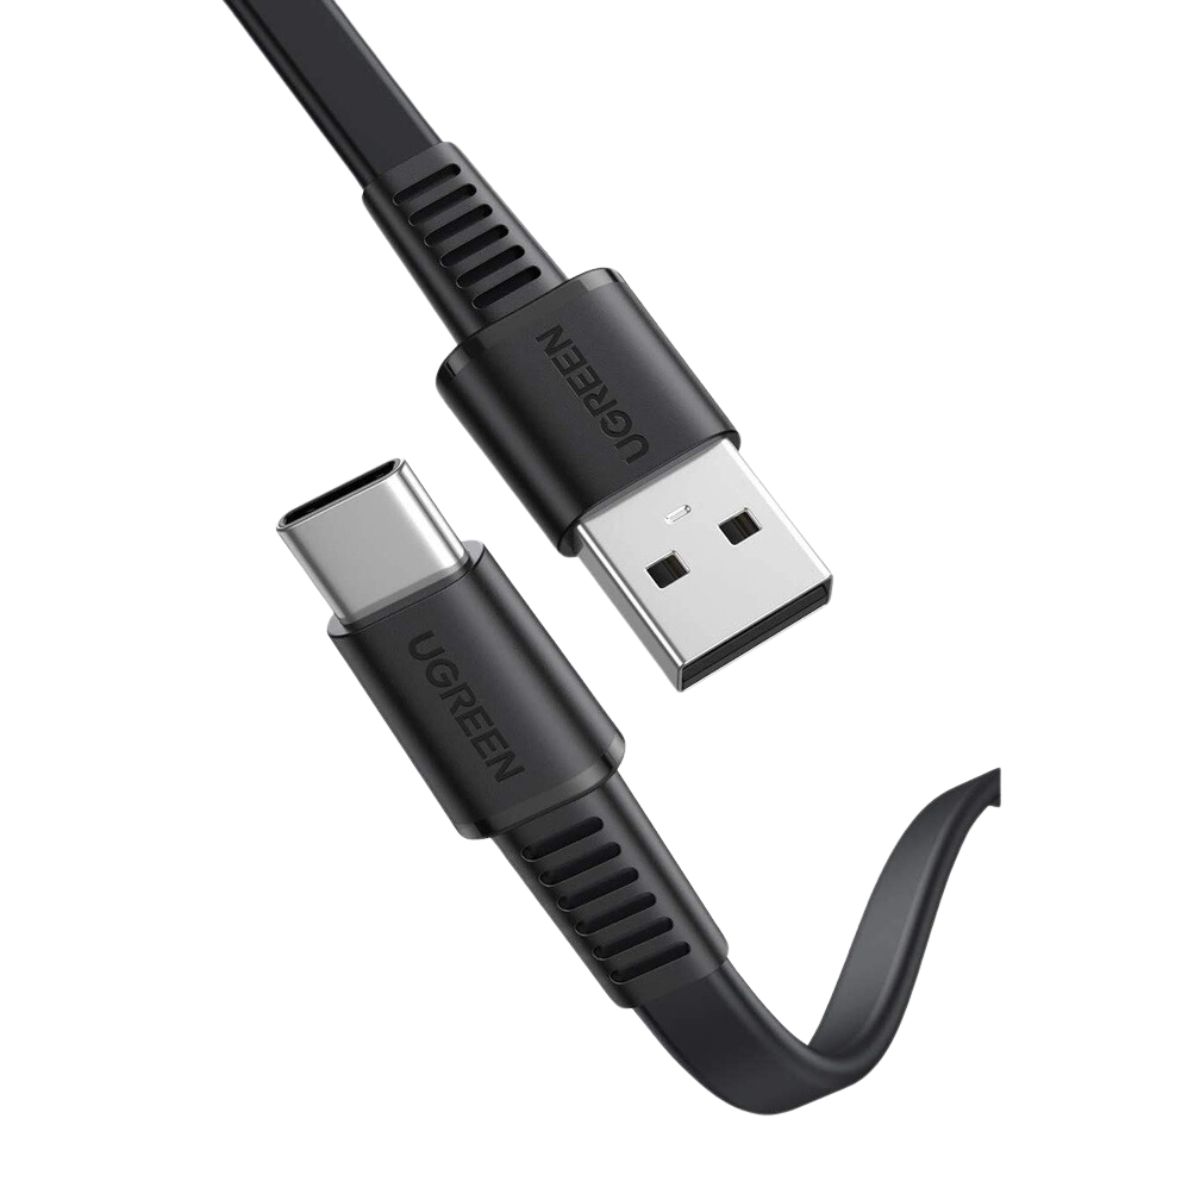 Cáp sạc nhanh 1m USB type C Ugreen 10975 US333 màu đen, hỗ trợ sạc nhanh 3A